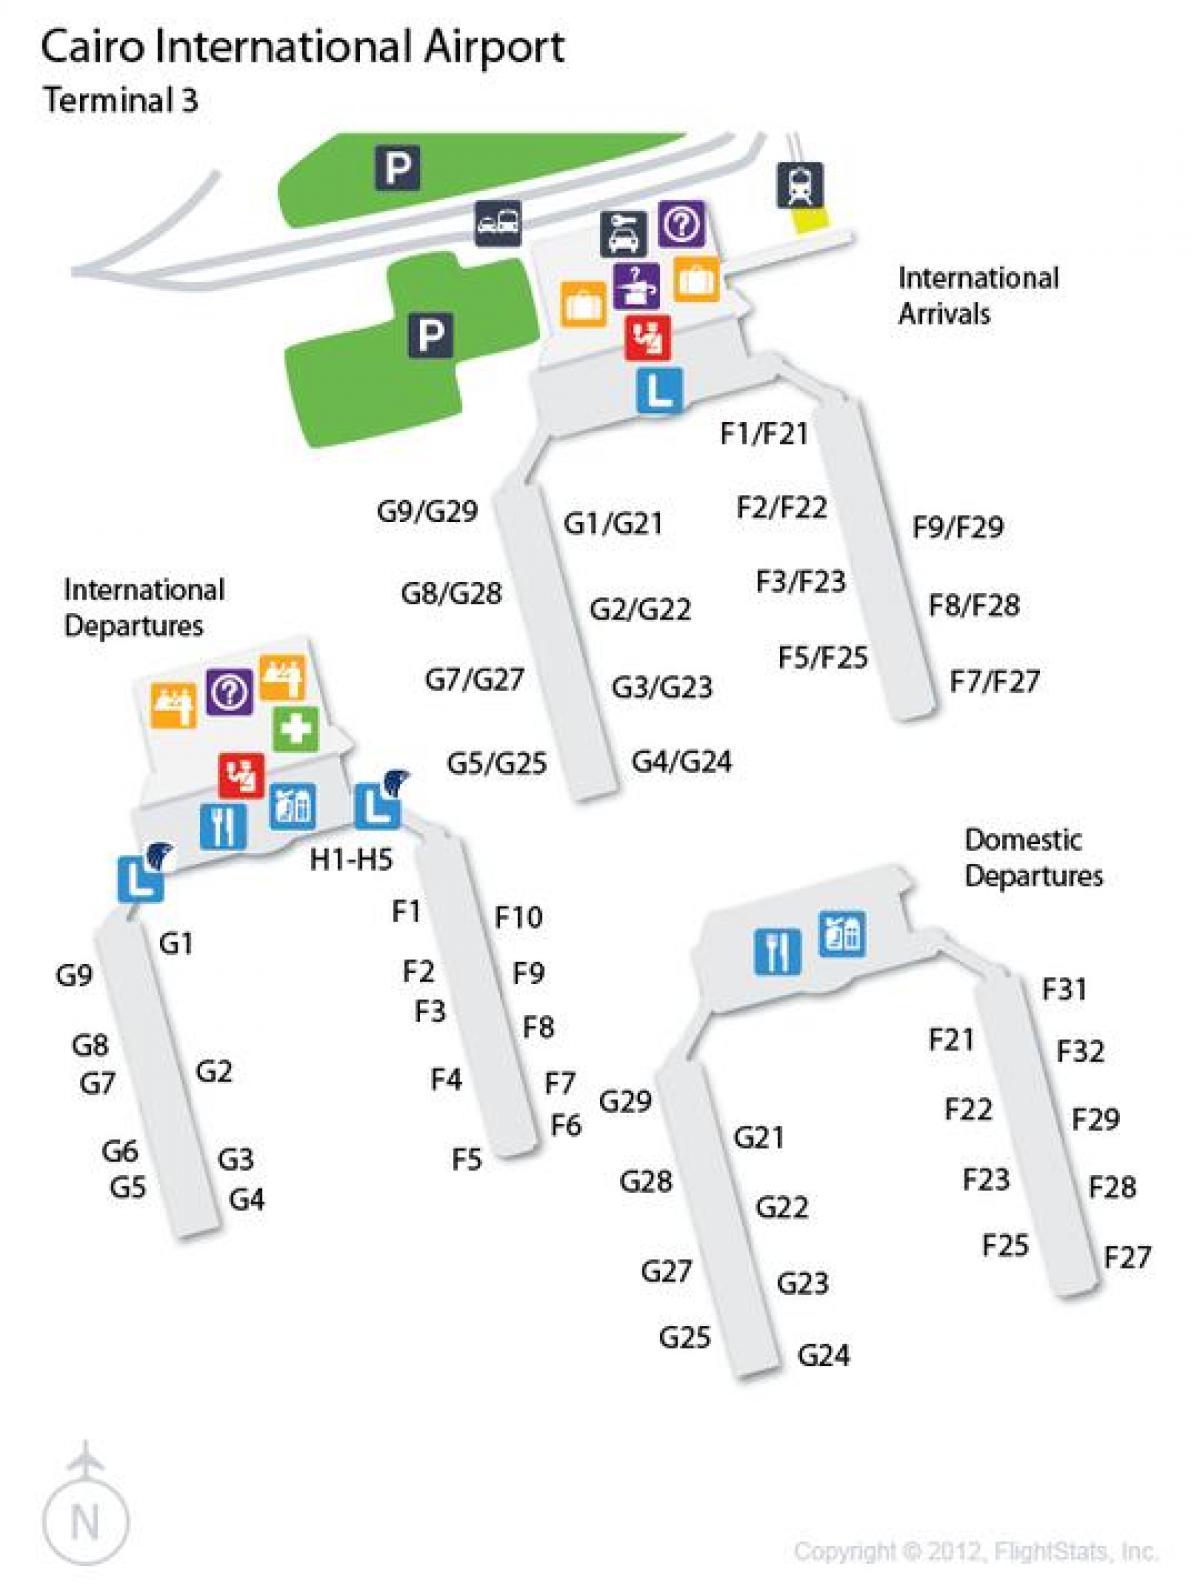 Mapu terminálu letiště v káhiře